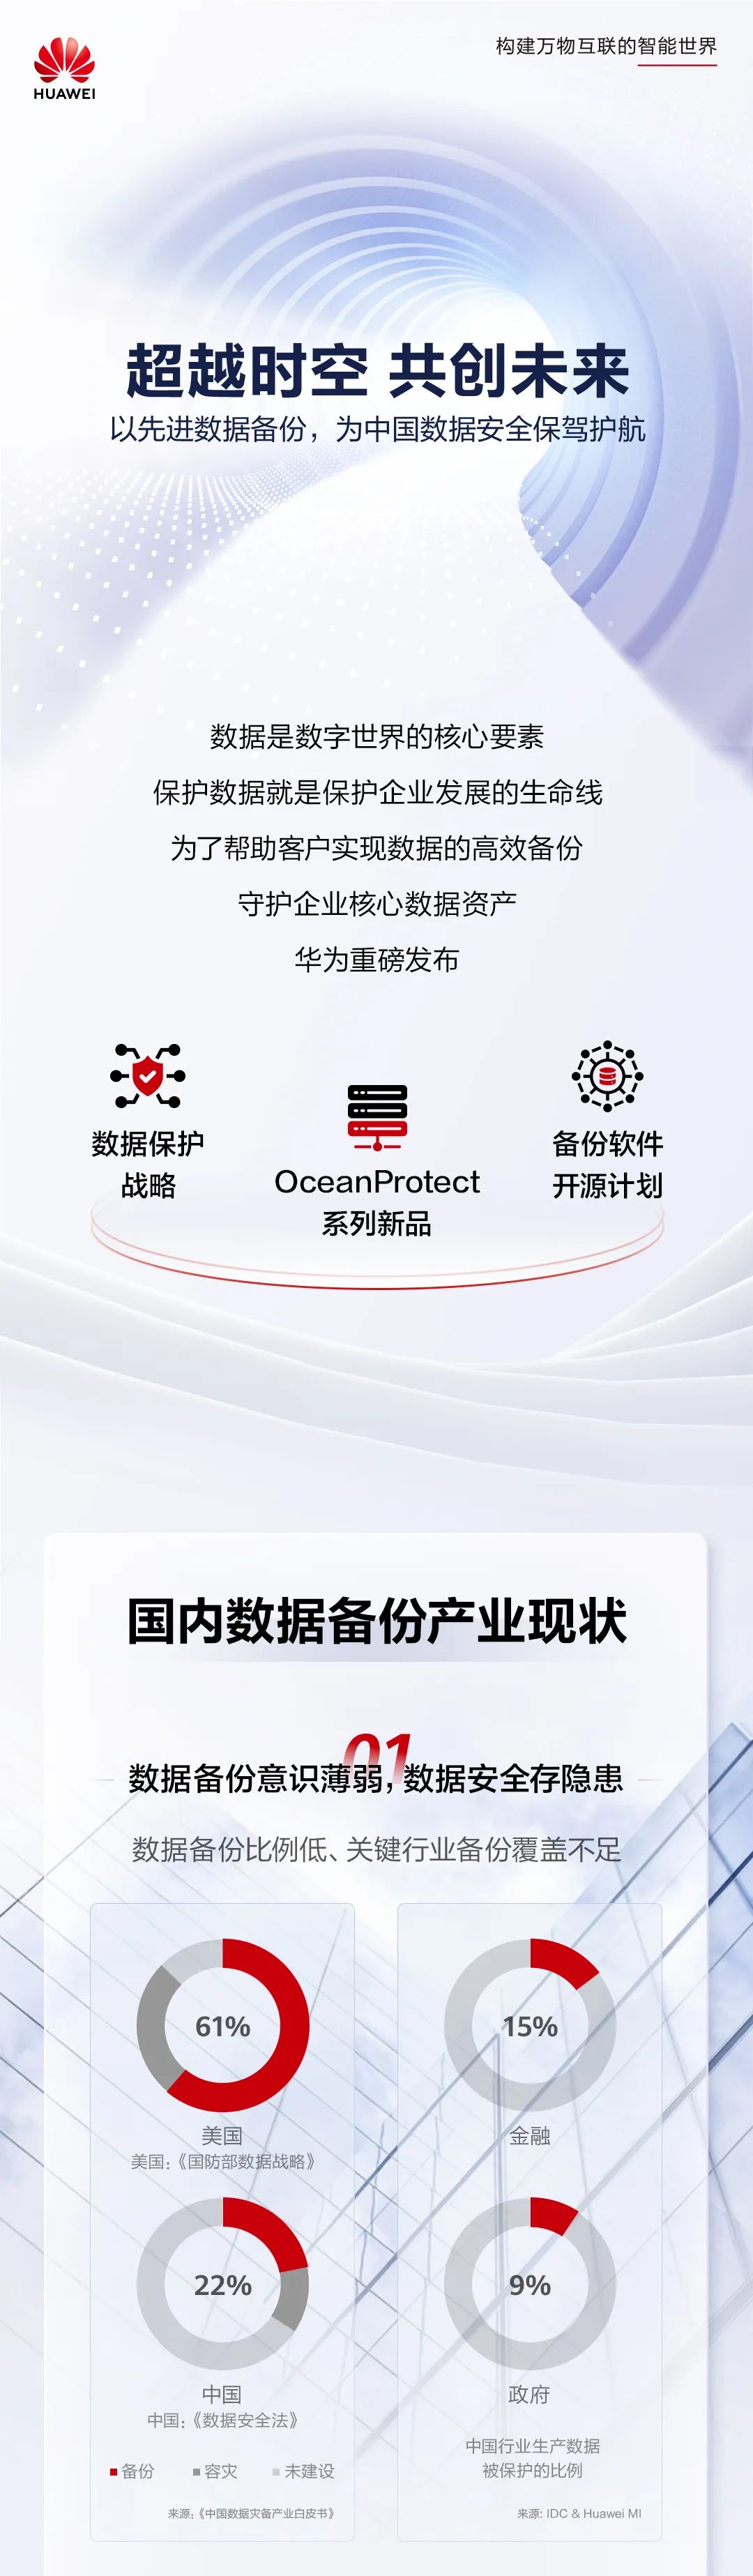 华为发布全闪备份一体机旗舰新品 OceanProtect X9000 / E8000，备份软件开源